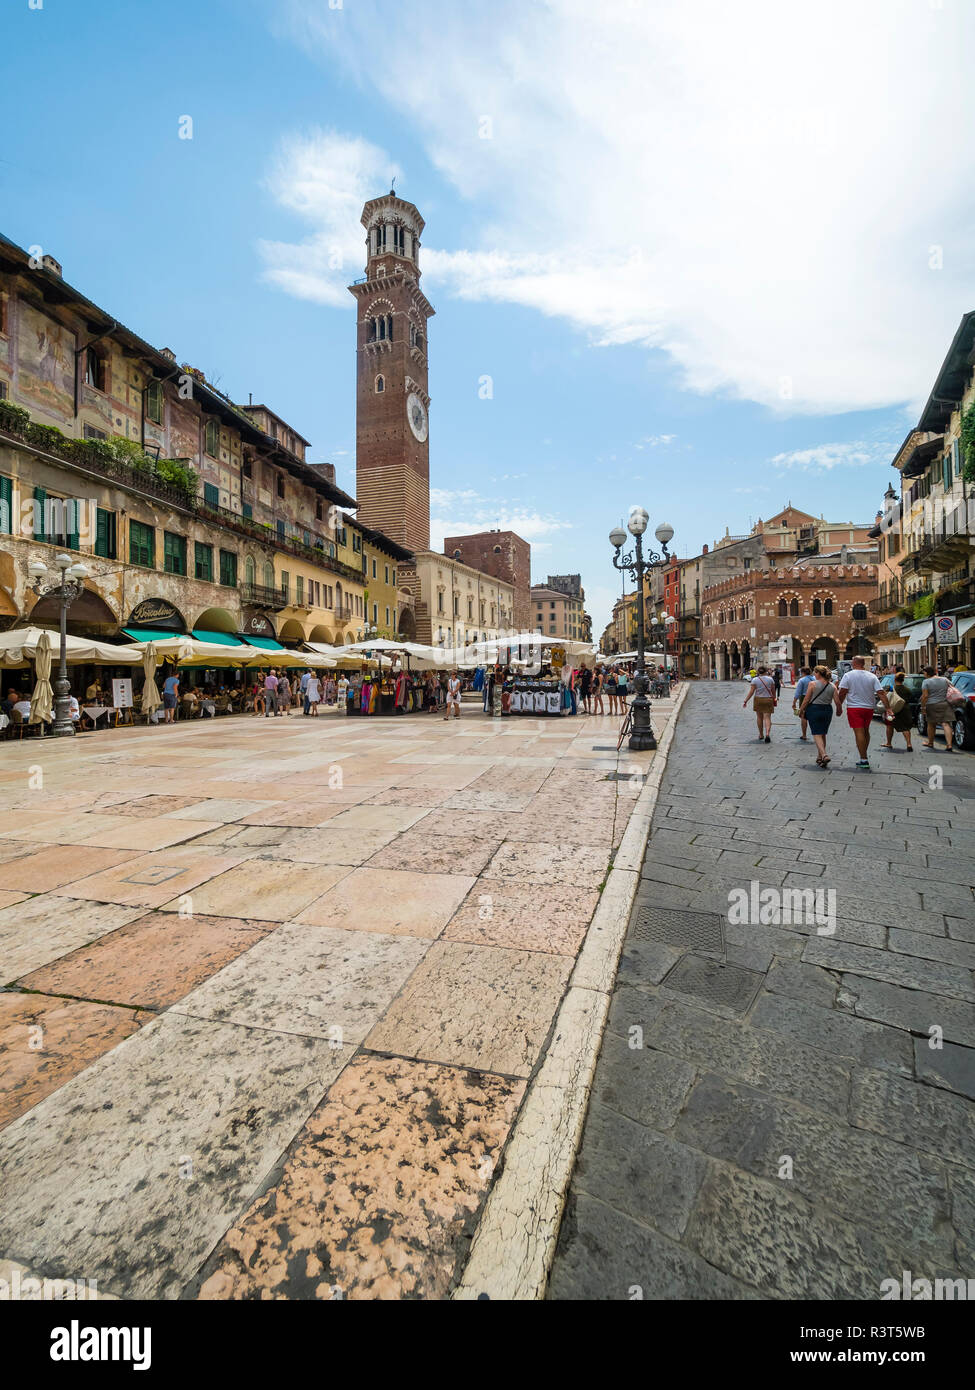 Italy, Verona, Piazza delle Erbe Stock Photo